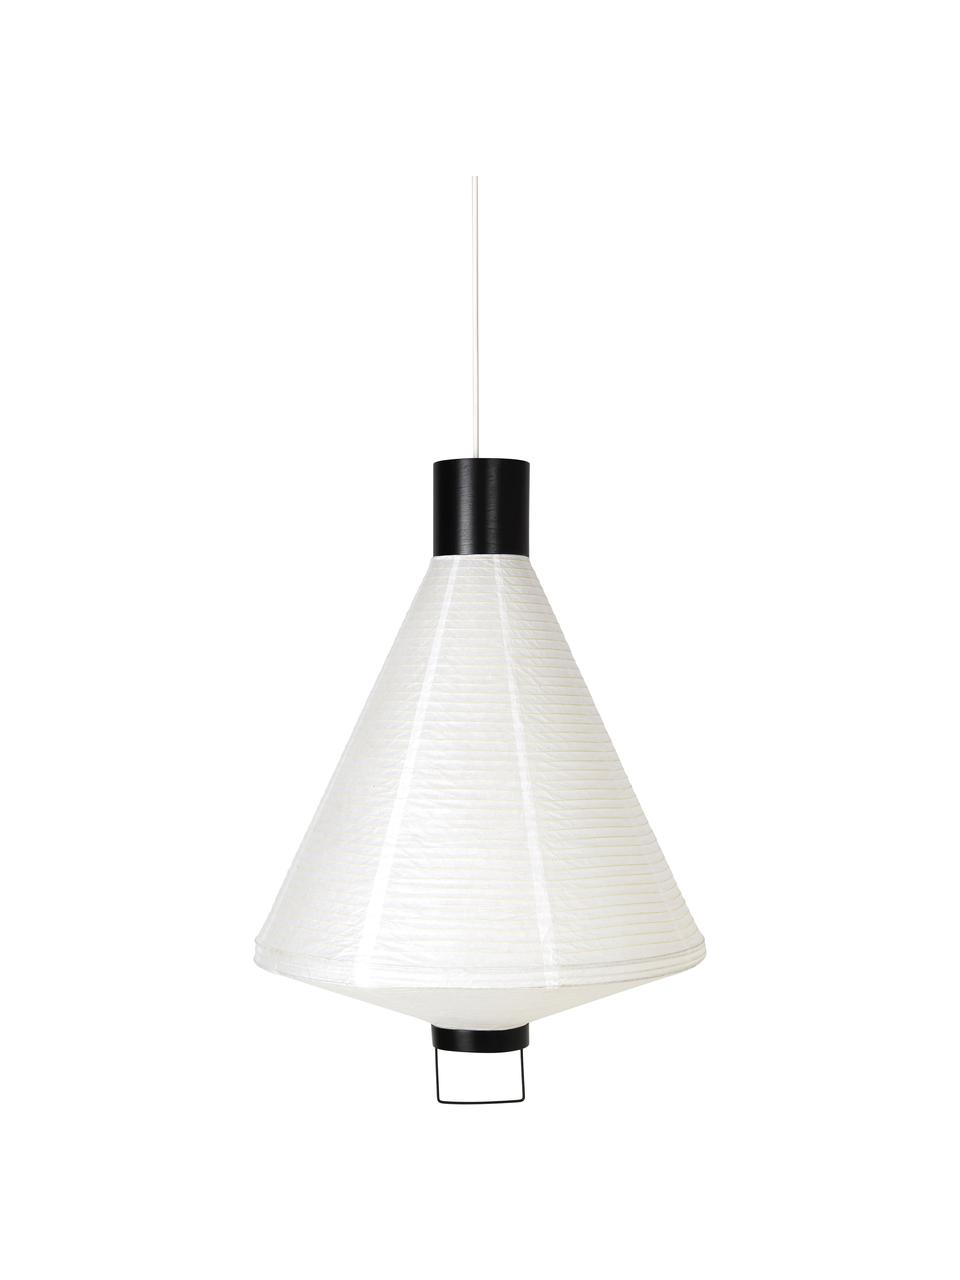 Lámpara de techo Ritta, estilo moderno, Pantalla: papel, Estructura: metal recubierto, Cable: cubierto en tela, Blanco, negro, Ø 47 x Al 68 cm